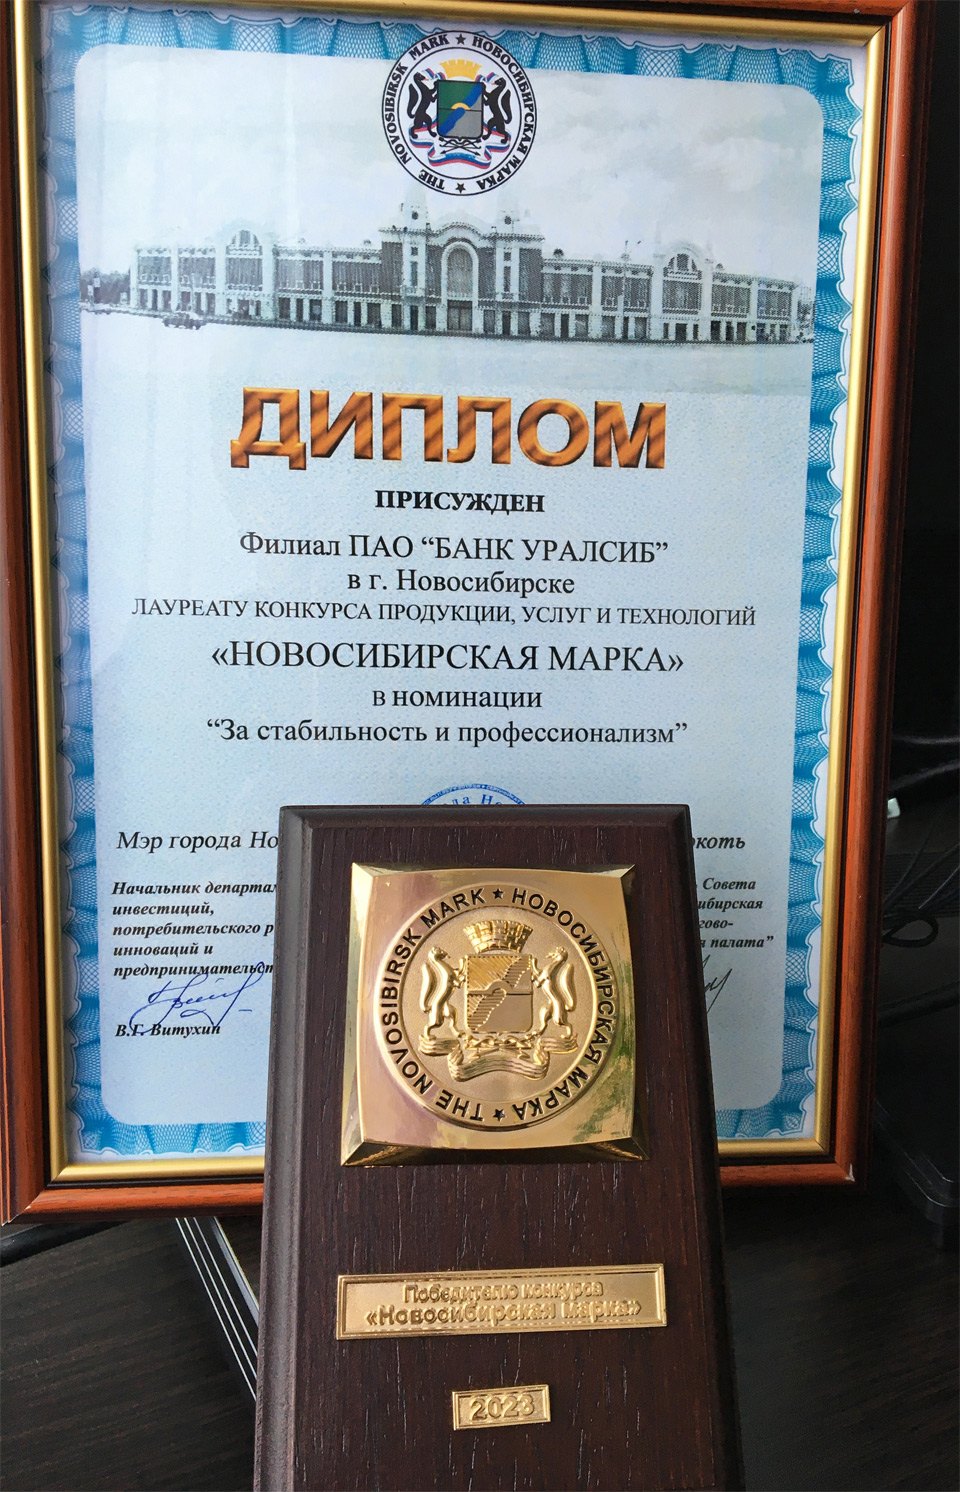 Уралсиб диплом Новосибирская марка